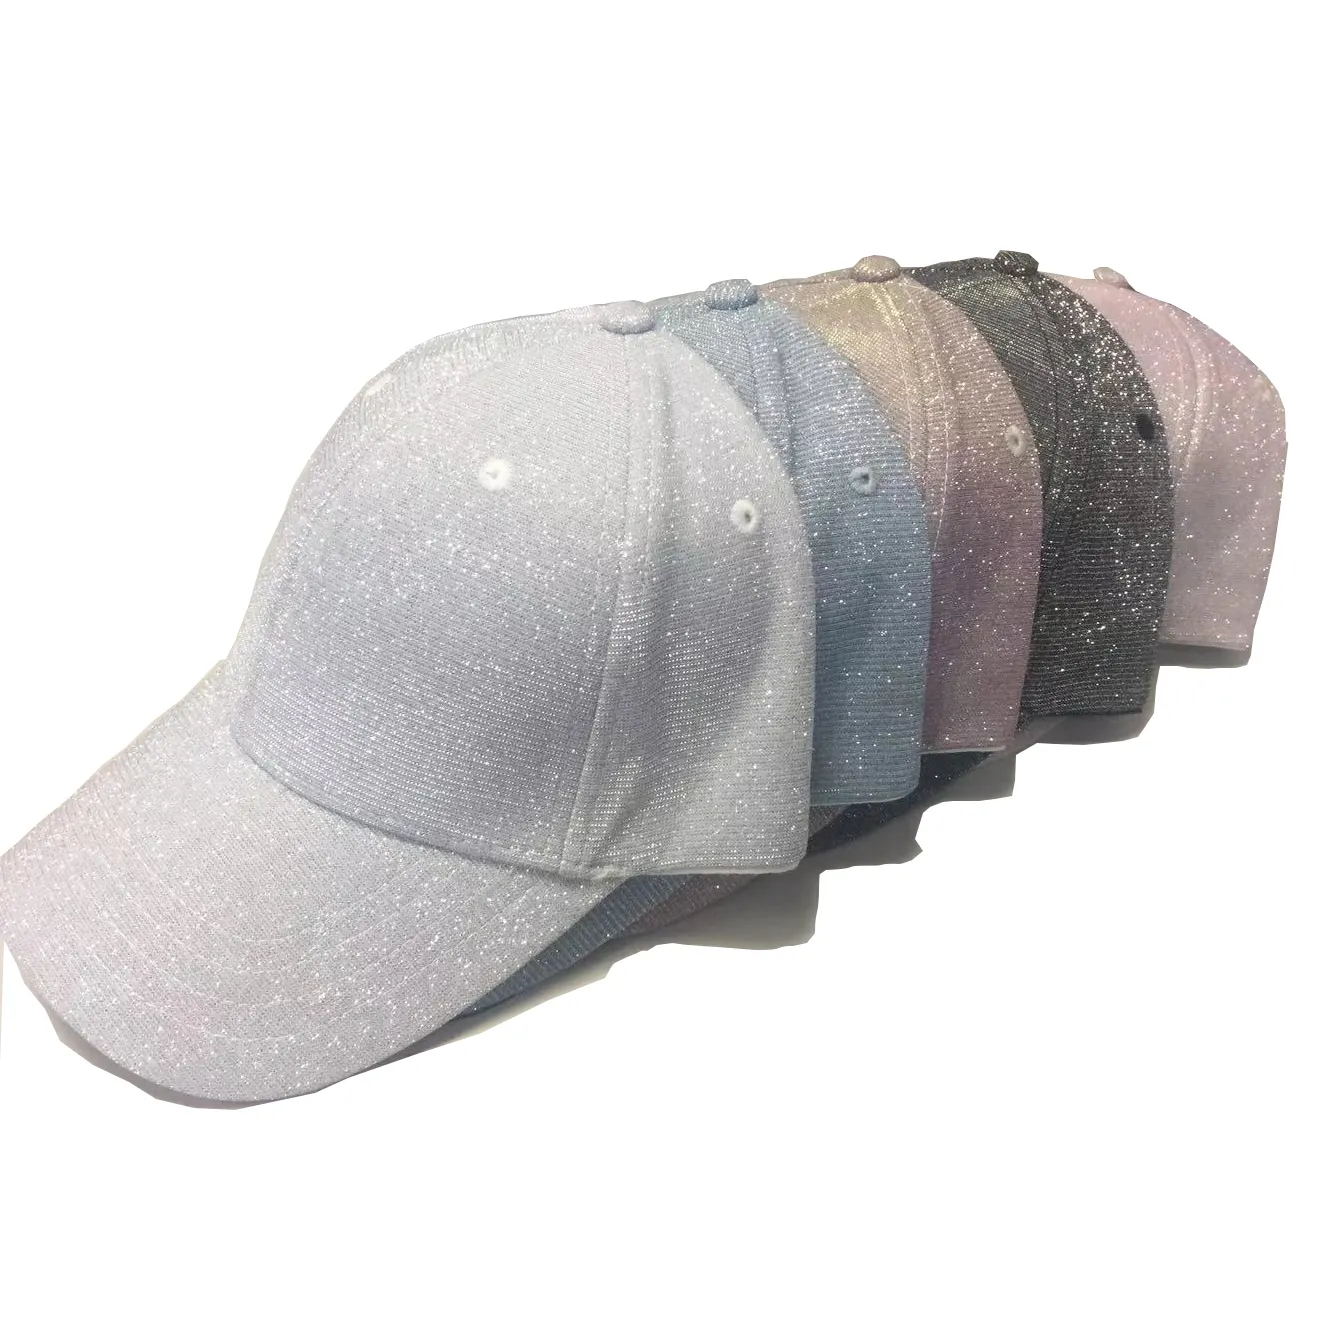 Gorra de béisbol tejida Vintage para niña, sombrero deportivo para fiesta, gorra personalizada, tela de nailon brillante en blanco